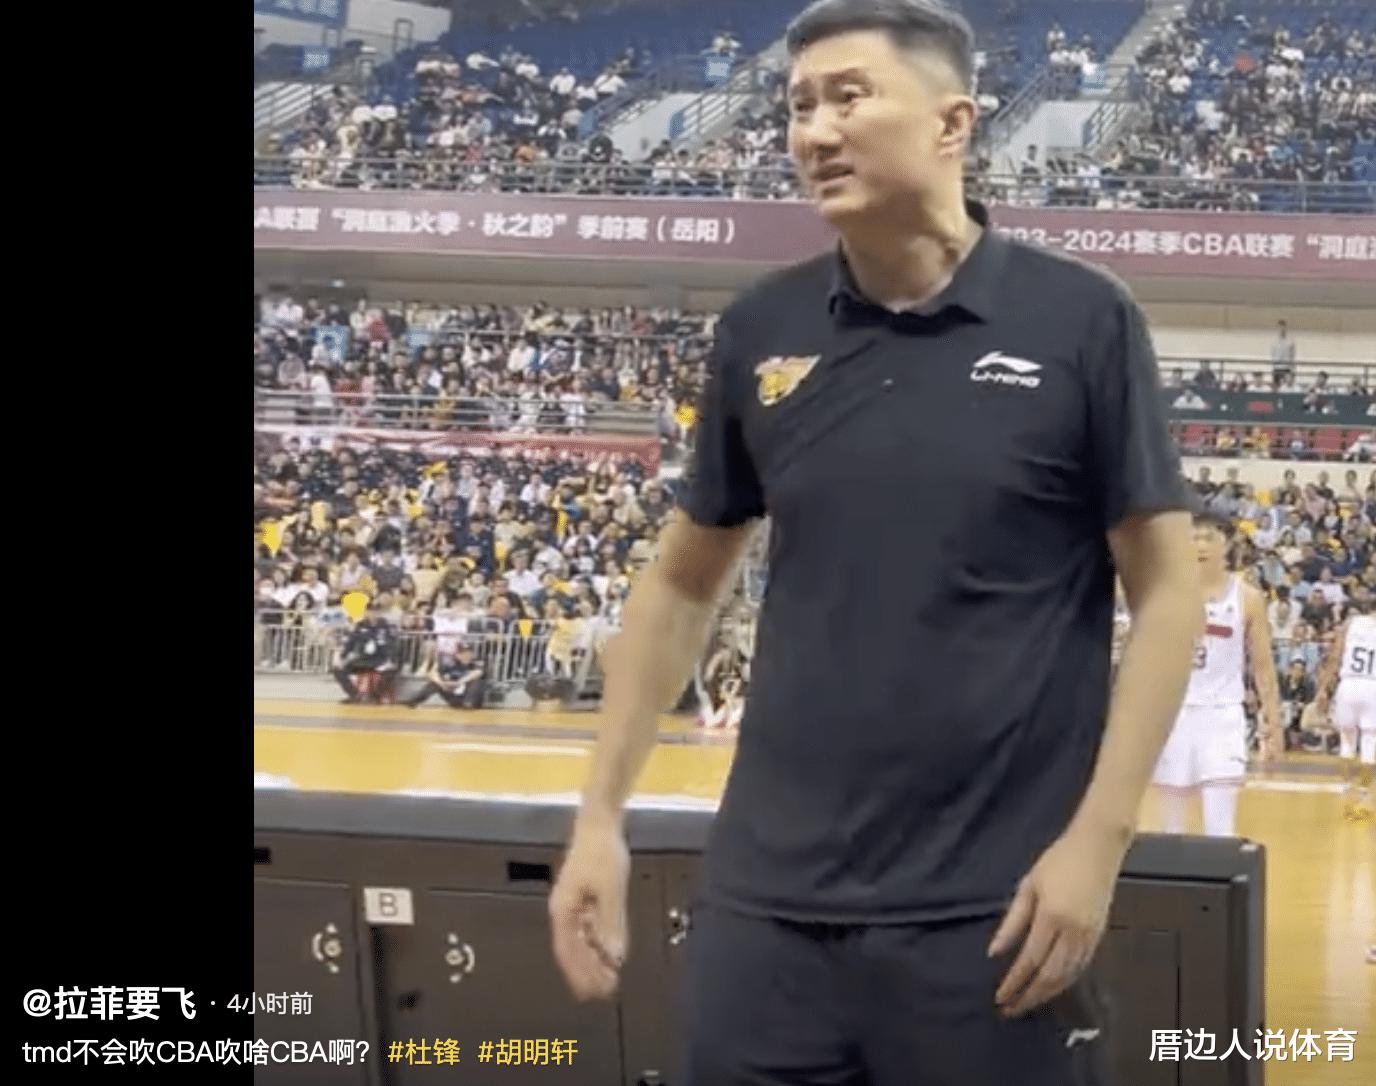 中国篮球扎心一幕 杜锋朝球迷竖大拇指怒喷裁判业余：不行吹啥CBA